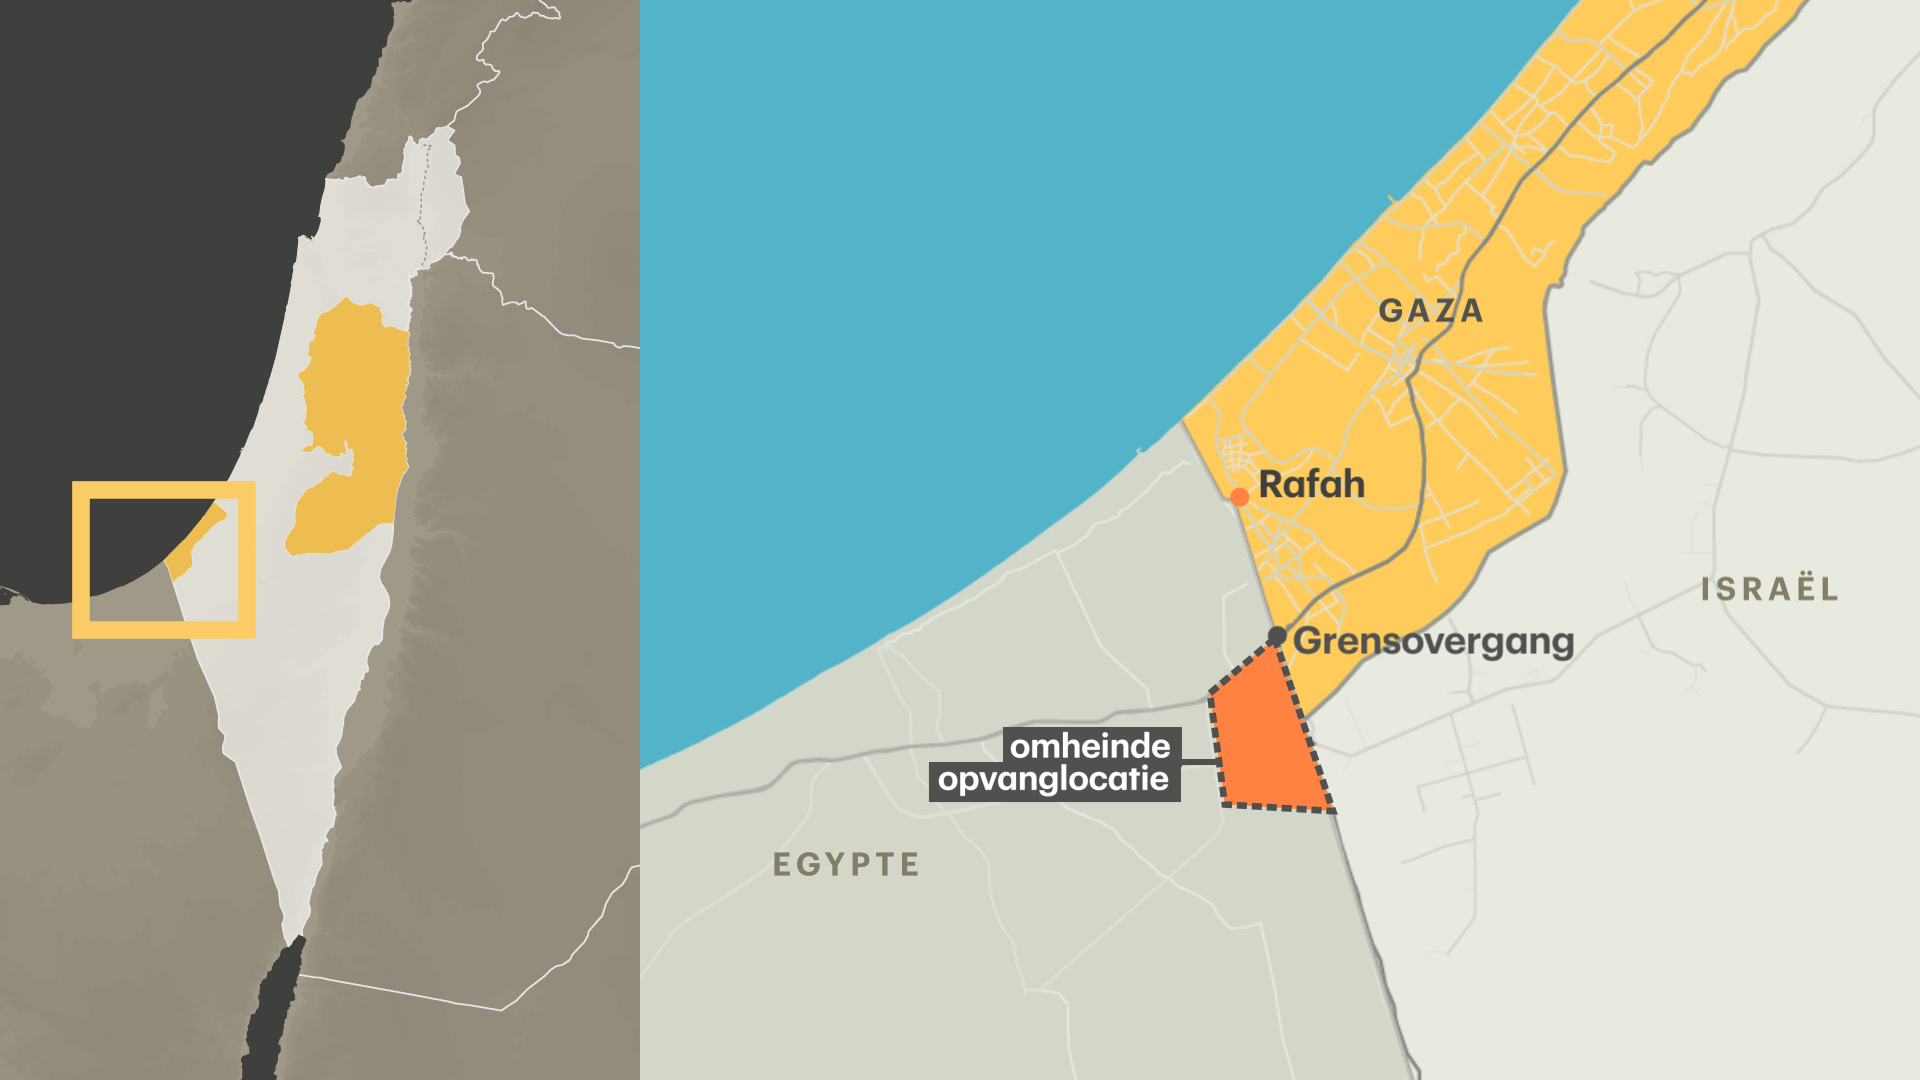 satellietfoto's bewijzen: egypte bouwt mysterieuze muur bij grens gaza